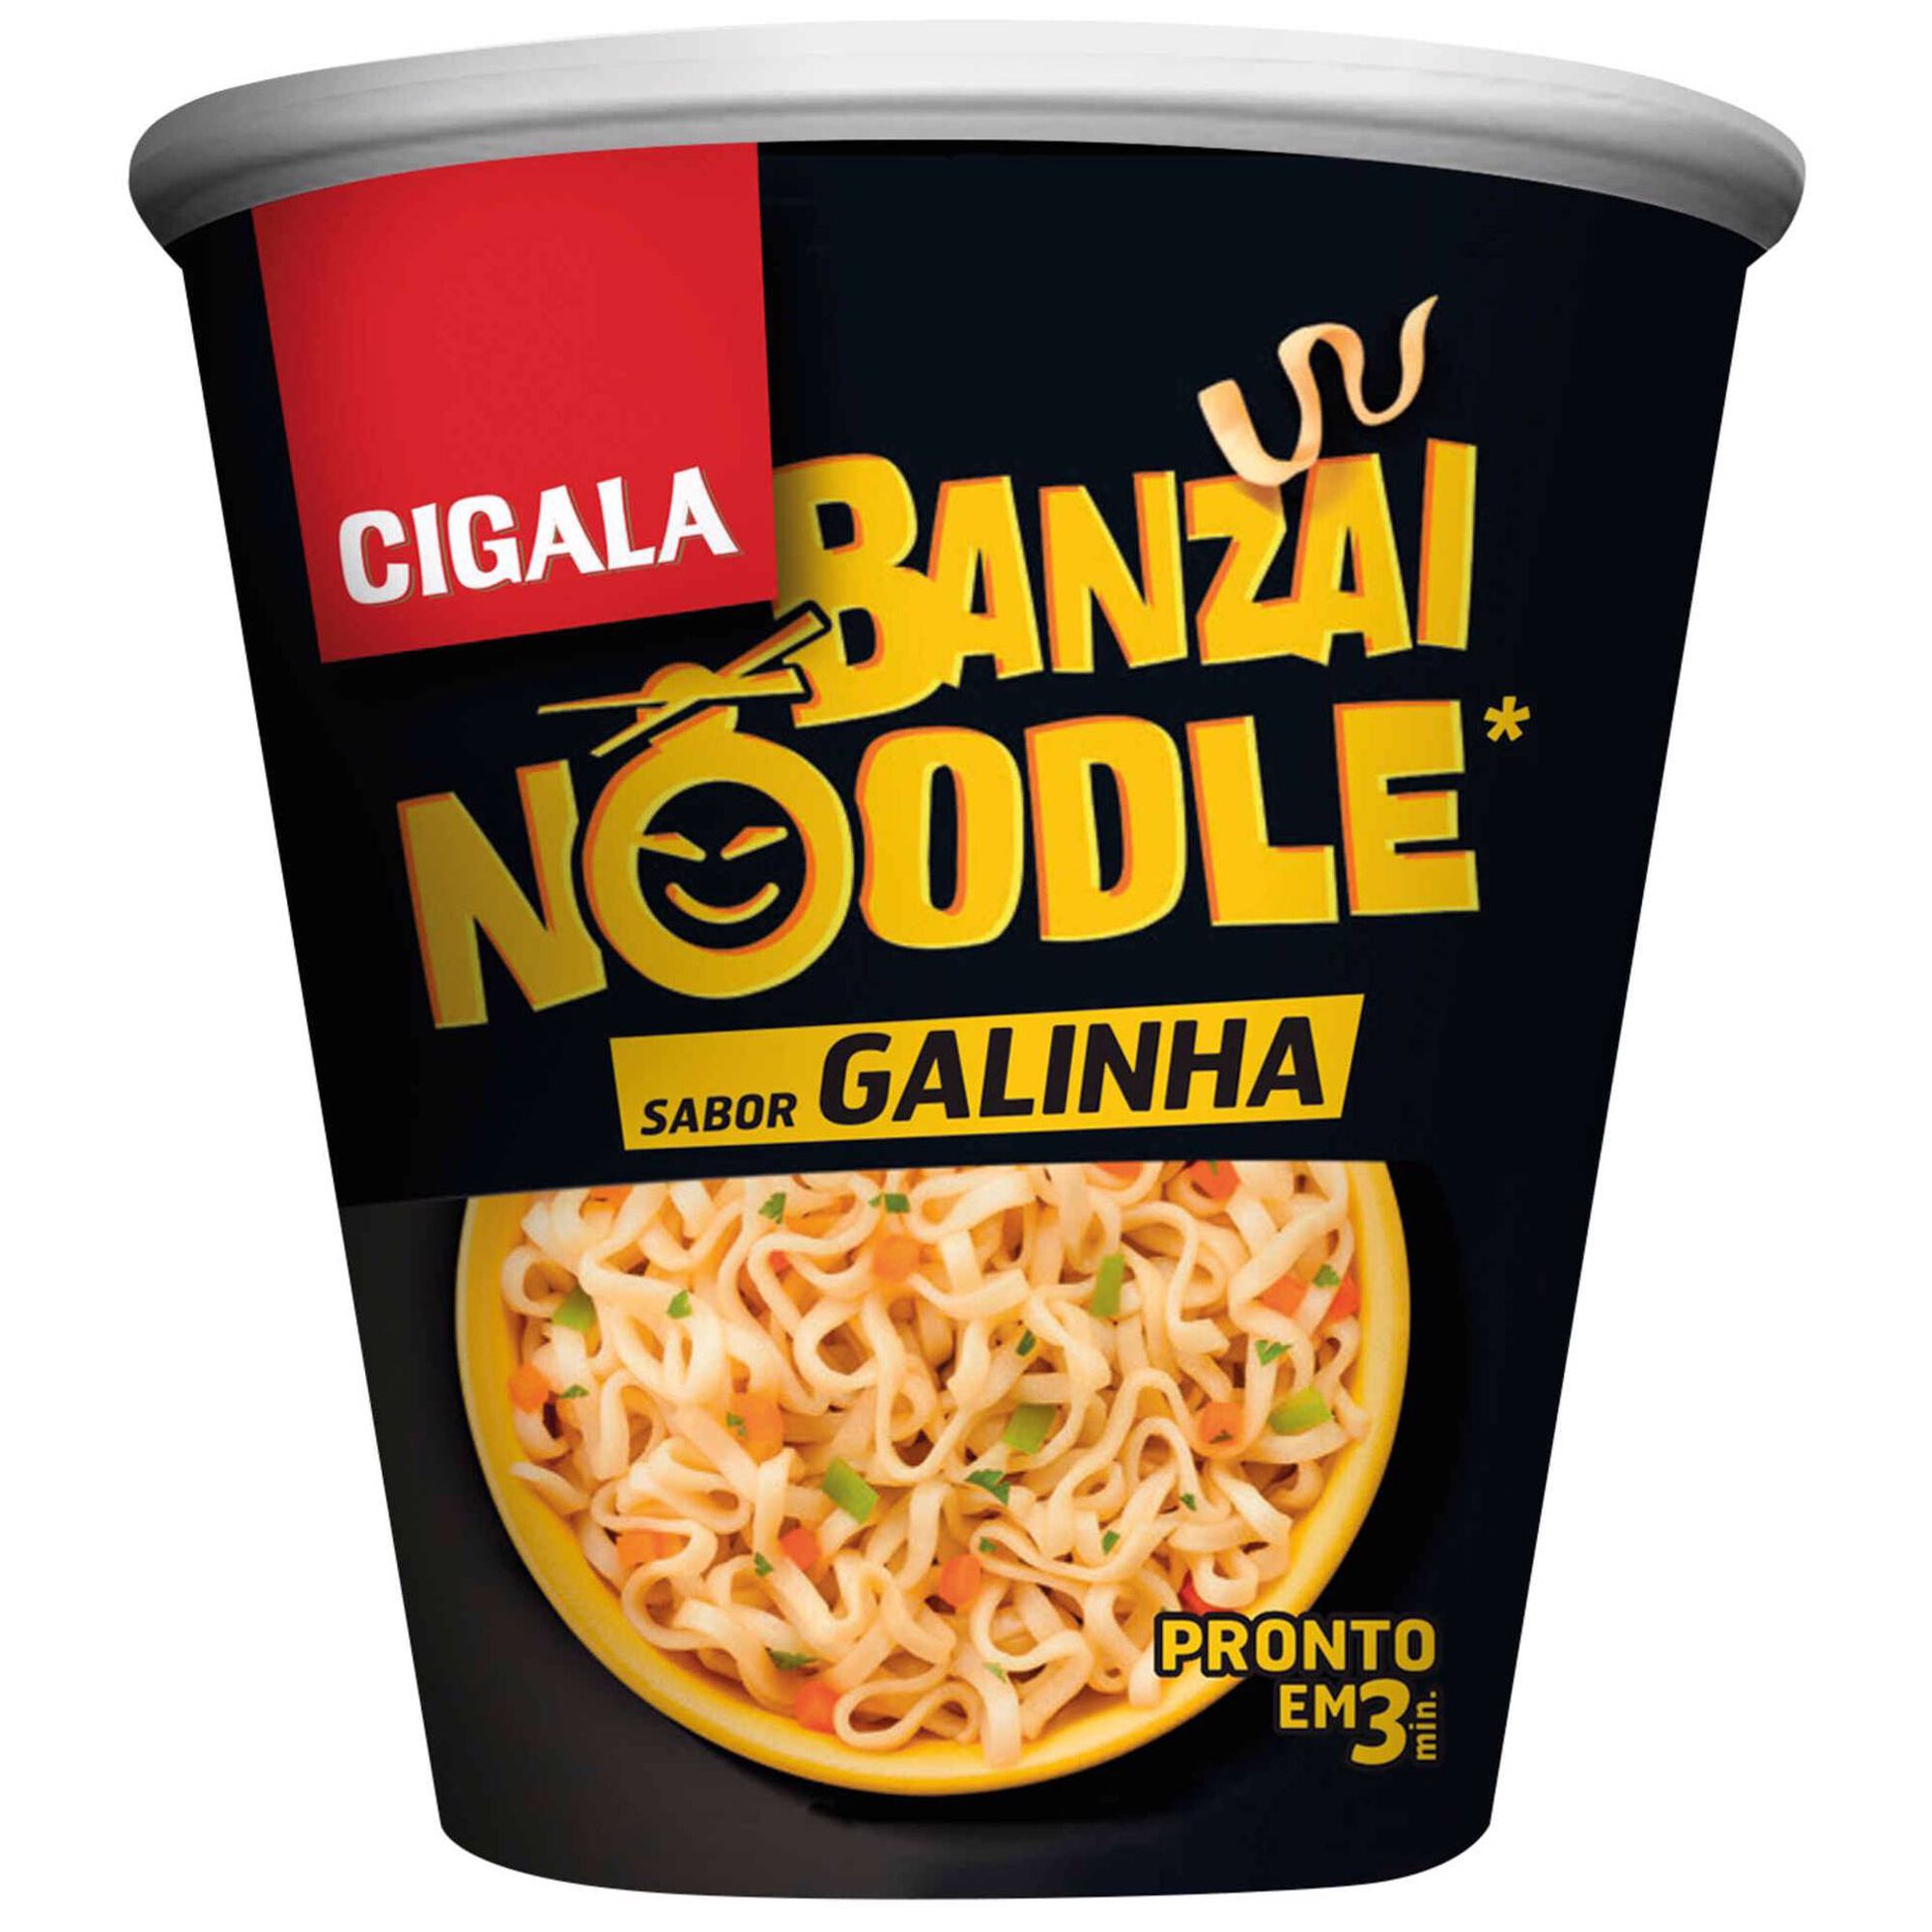 Noodles de Galinha Banzai